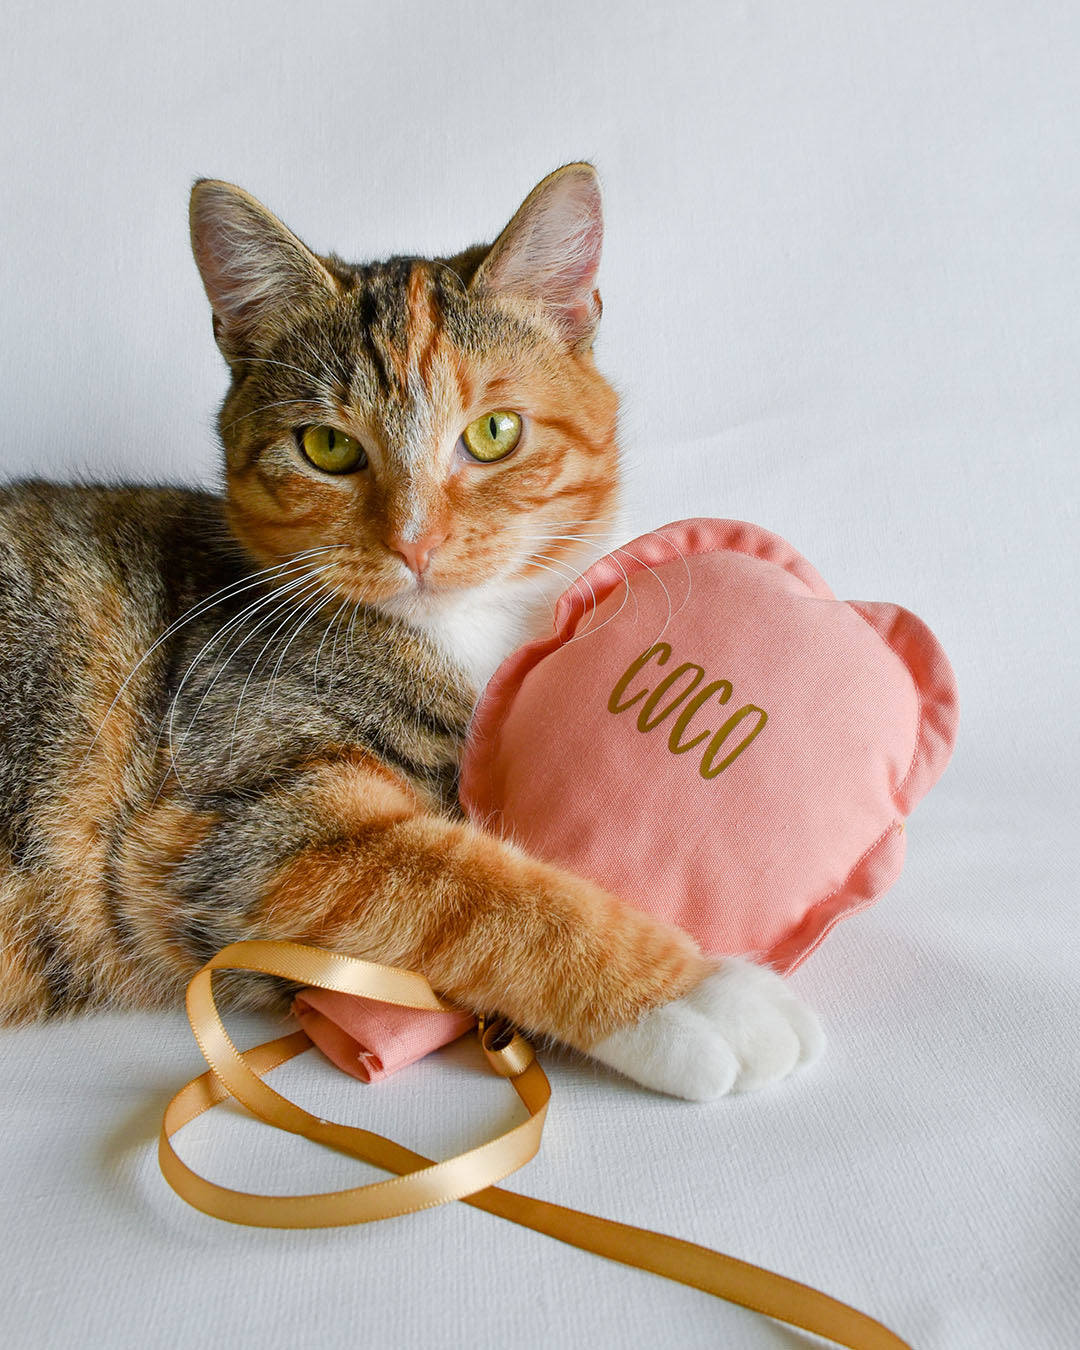 Ballon zacht roze / oud roze - Kattenspeeltje - Kattenkruid speeltje - handgemaakt - Nijmegen - Maudje & Co - kat - kattenspeelgoed